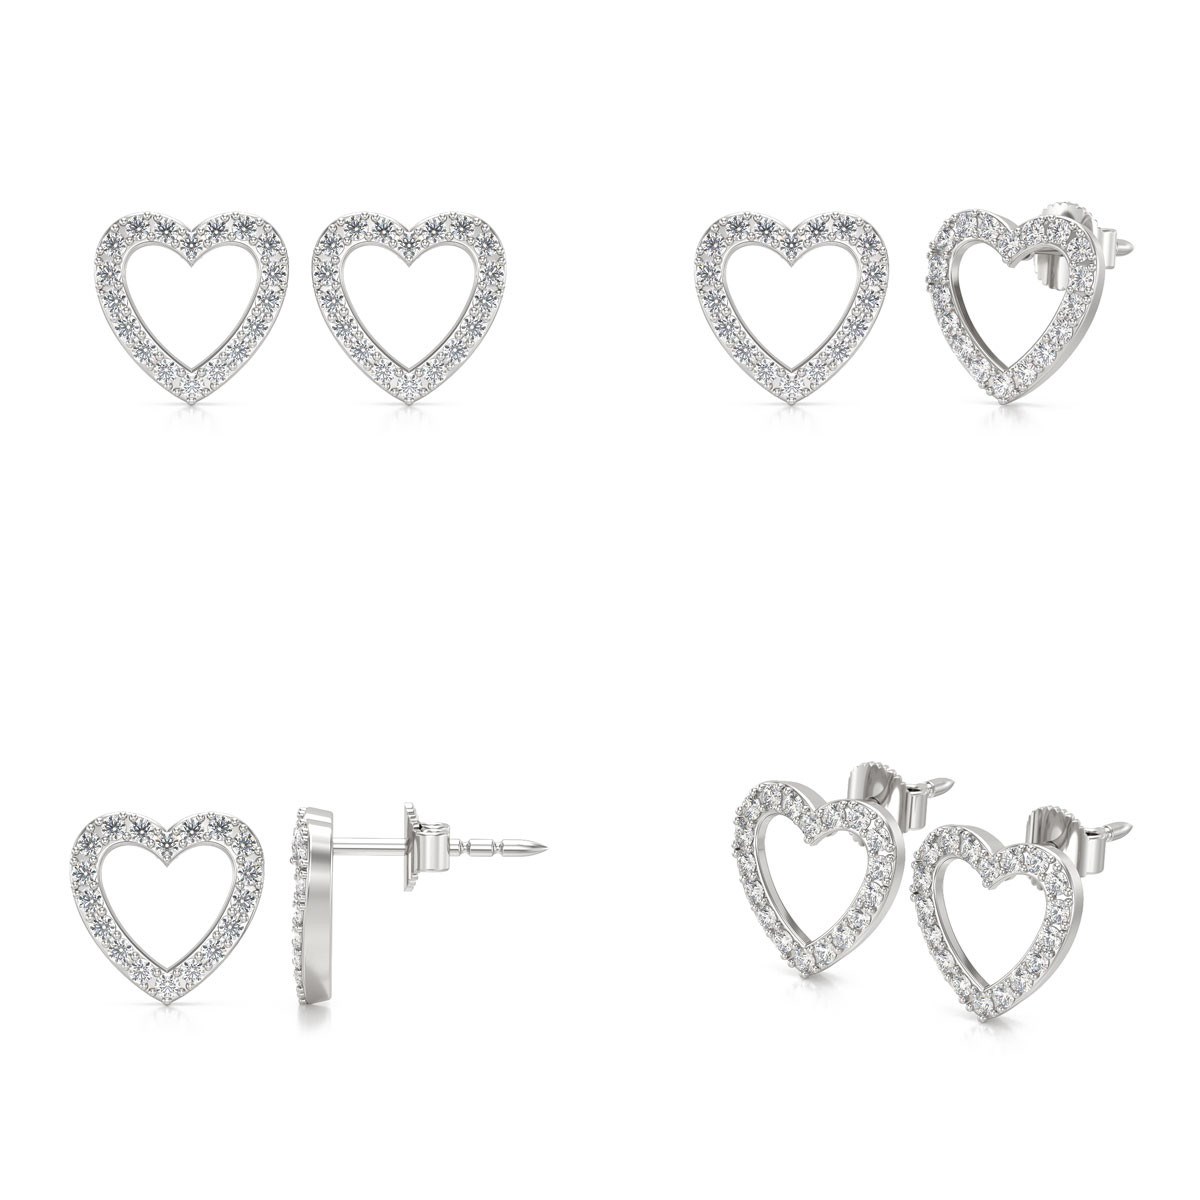 Boucles d'oreilles ADEN Coeur Diamants sur Argent 925 1.284grs - vue 2